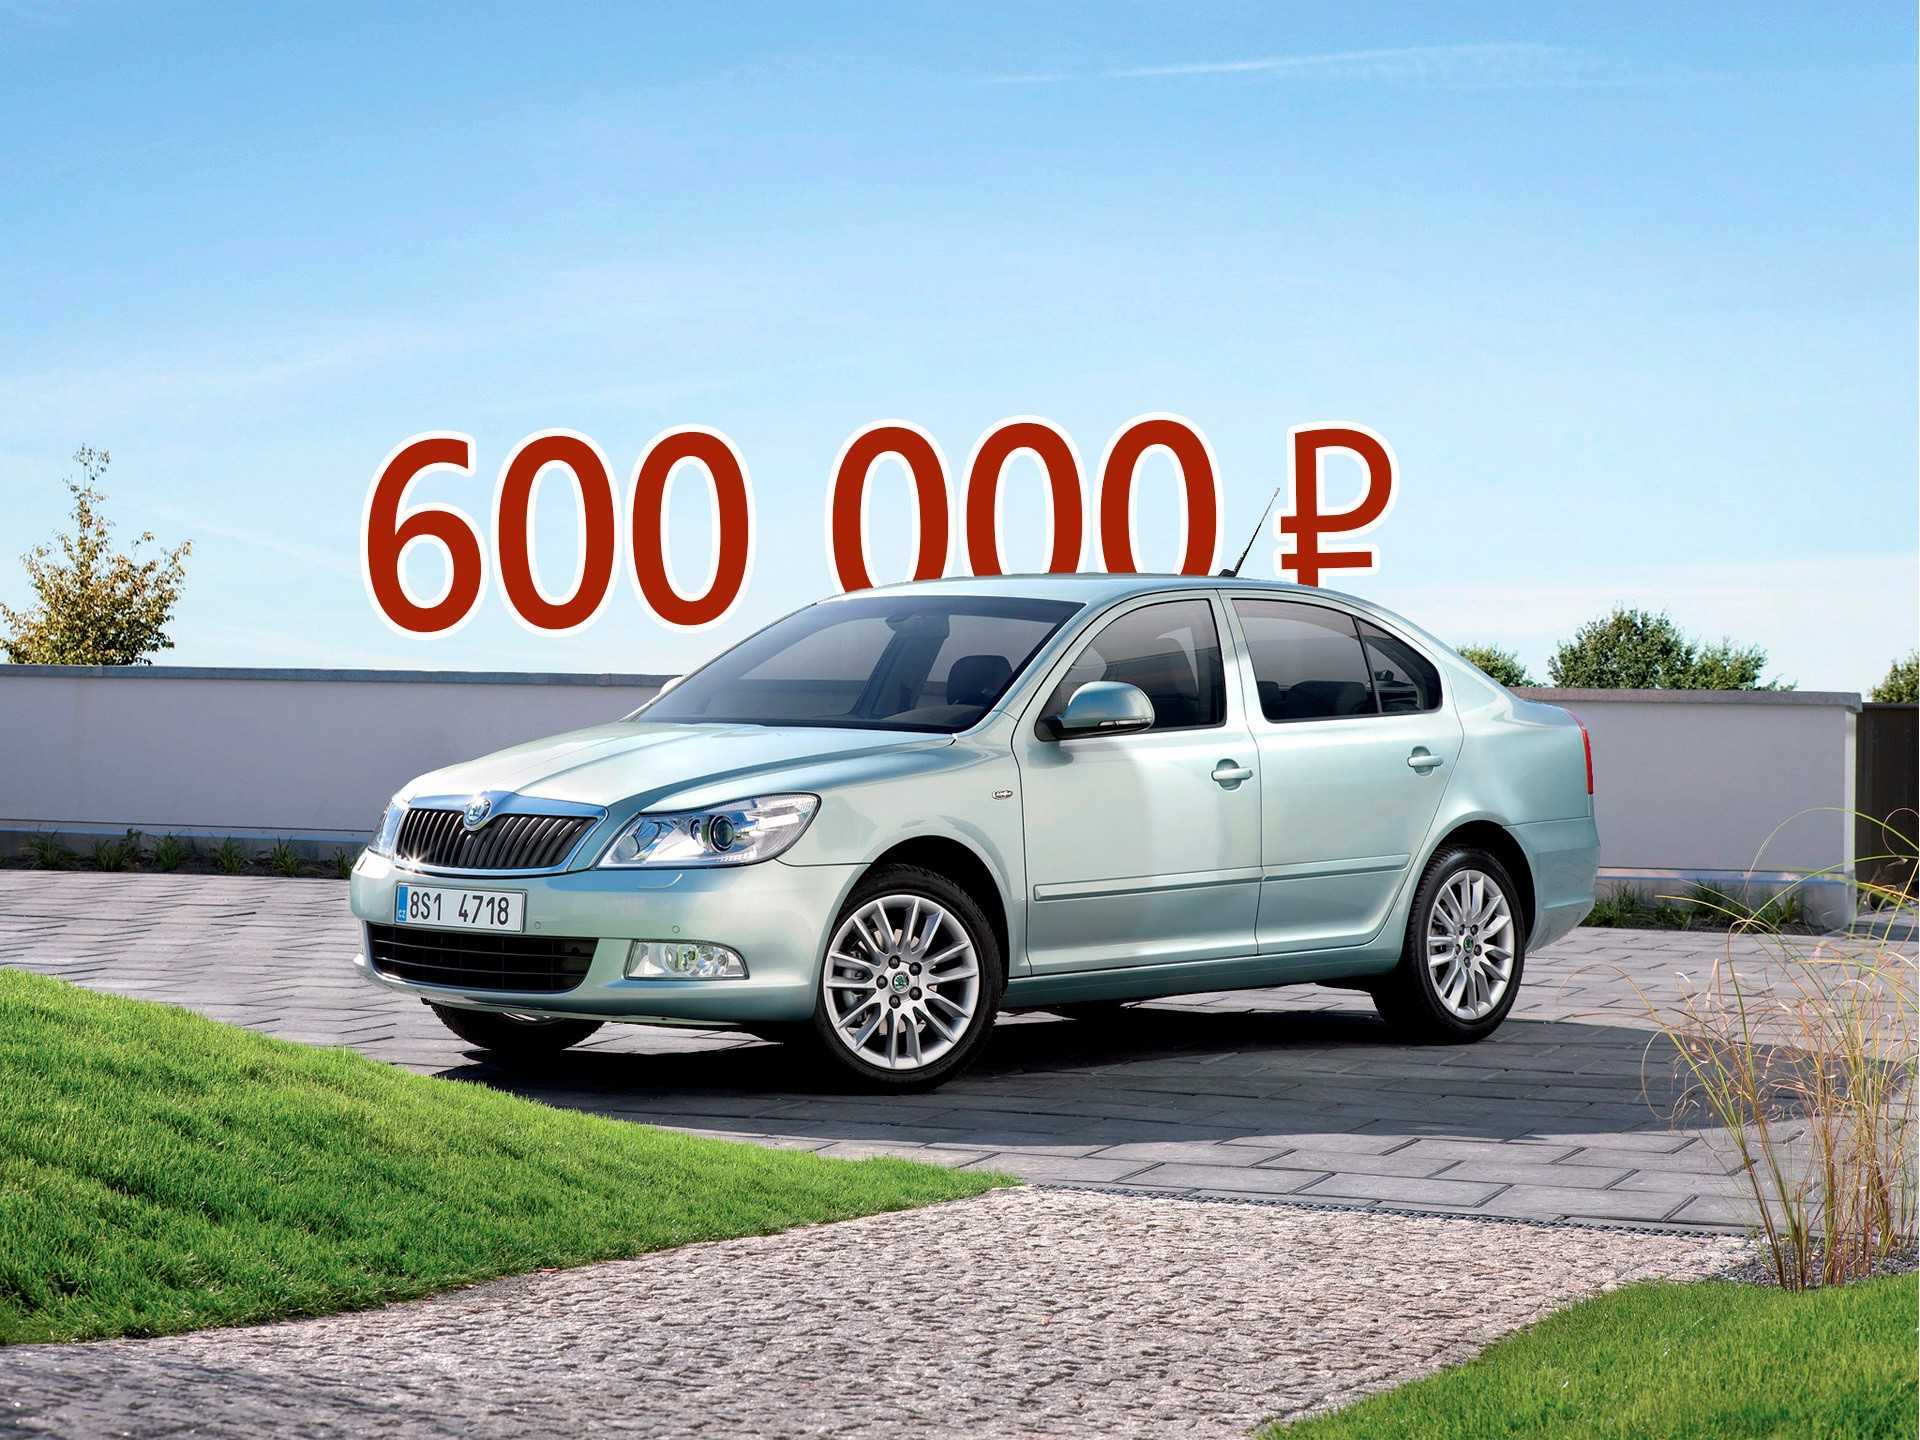 Автомобиль за 0 5 час. Машины до 600000. Машины до 600 000 рублей. Машины за 500-600 тысяч рублей. Автомобиль за 1000 рублей.